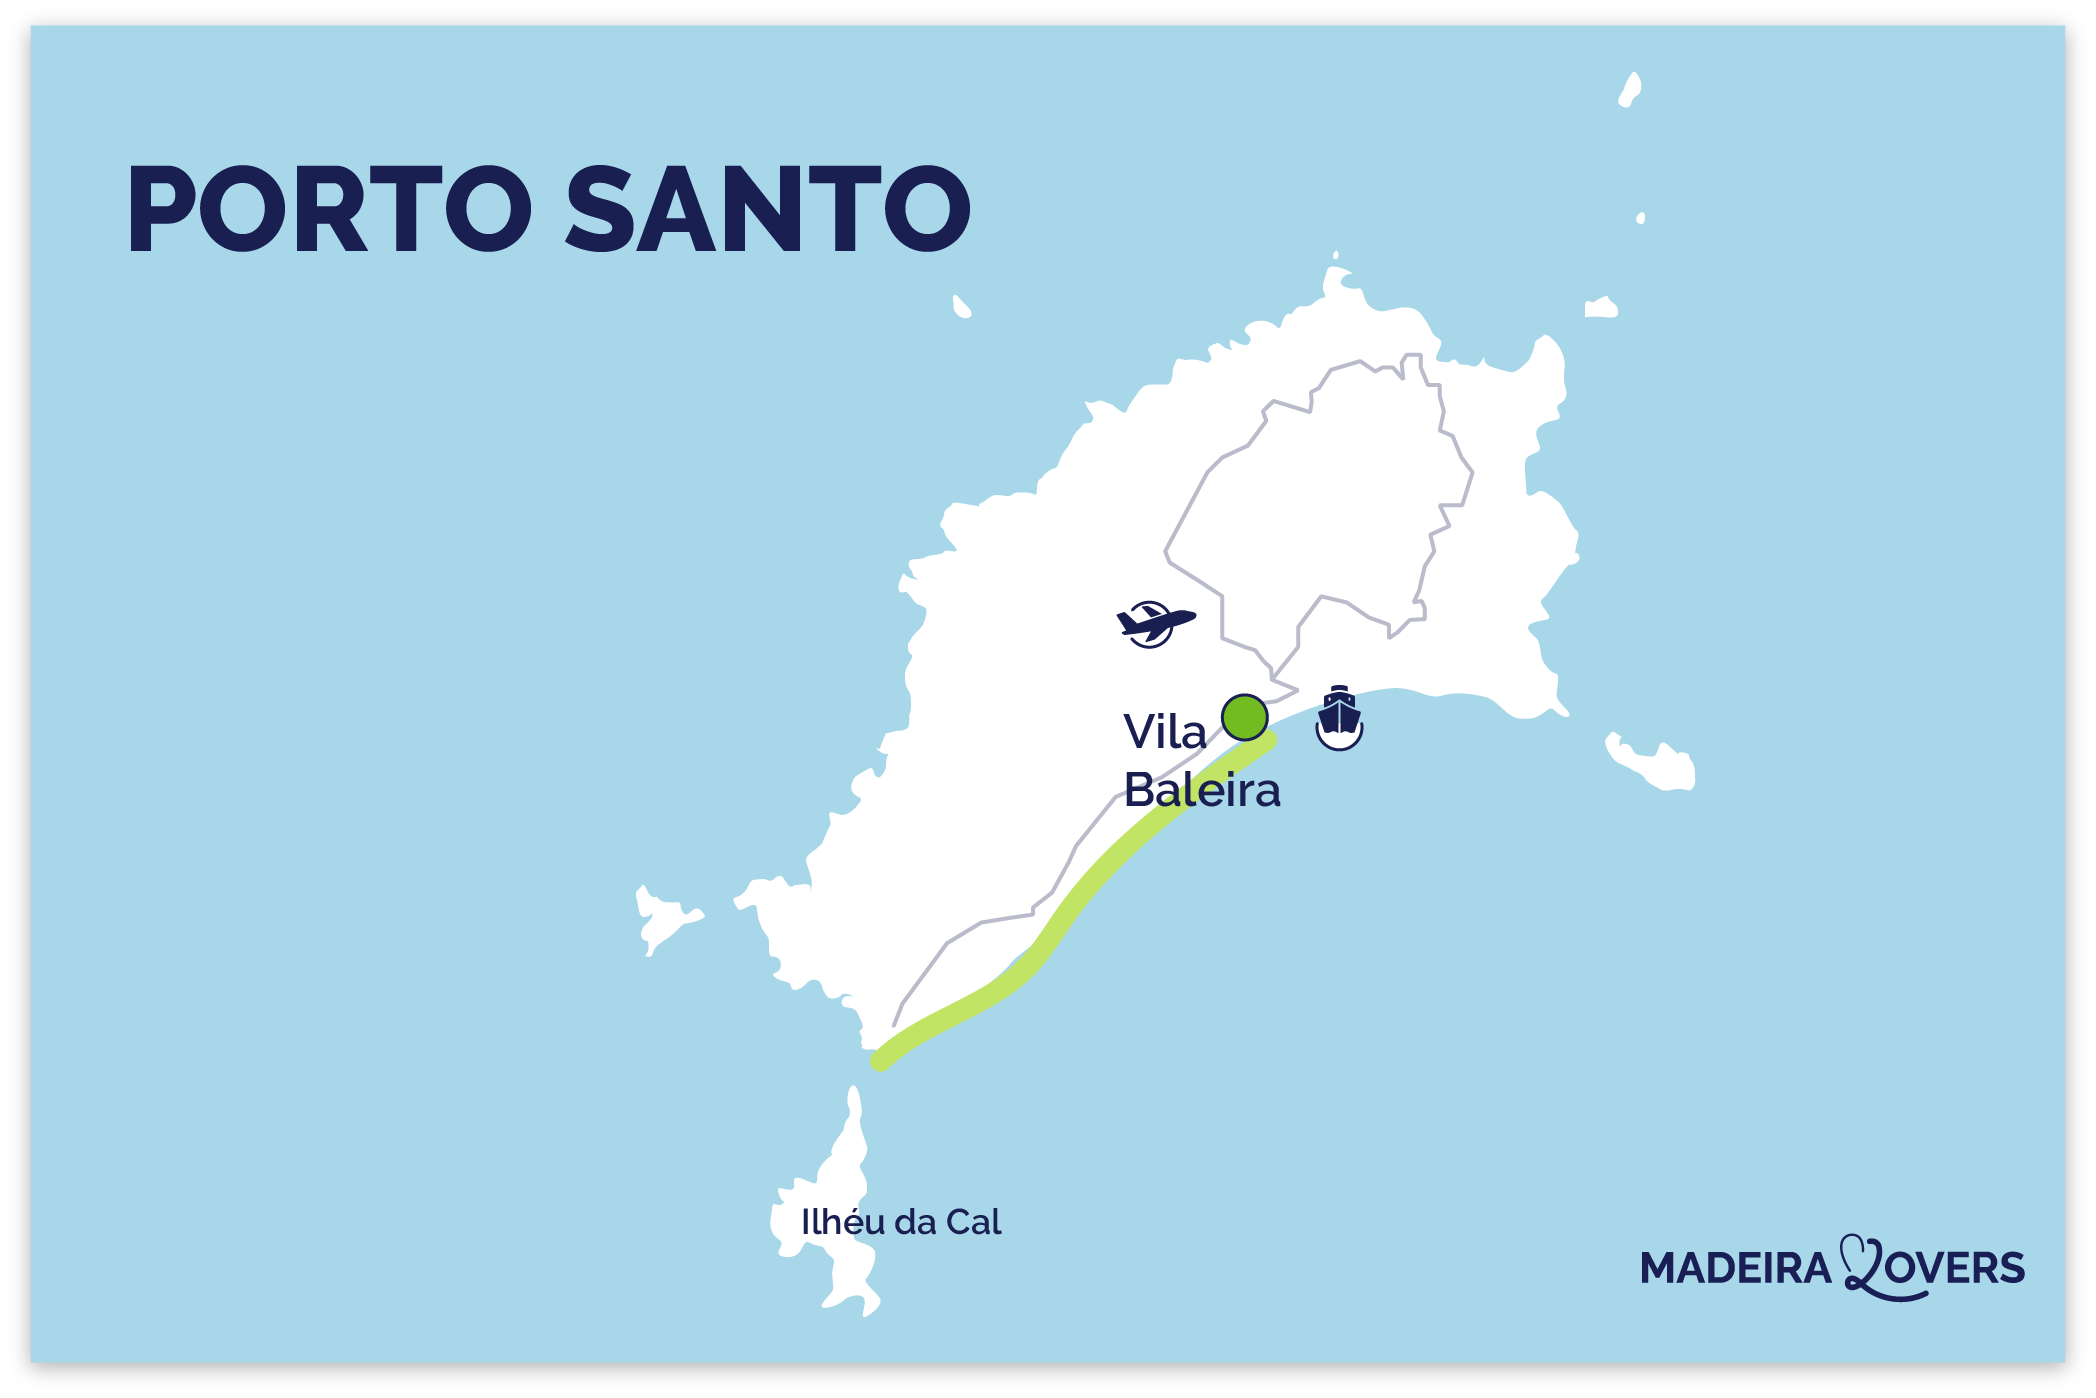 comment aller a Porto Santo aeroport ferry